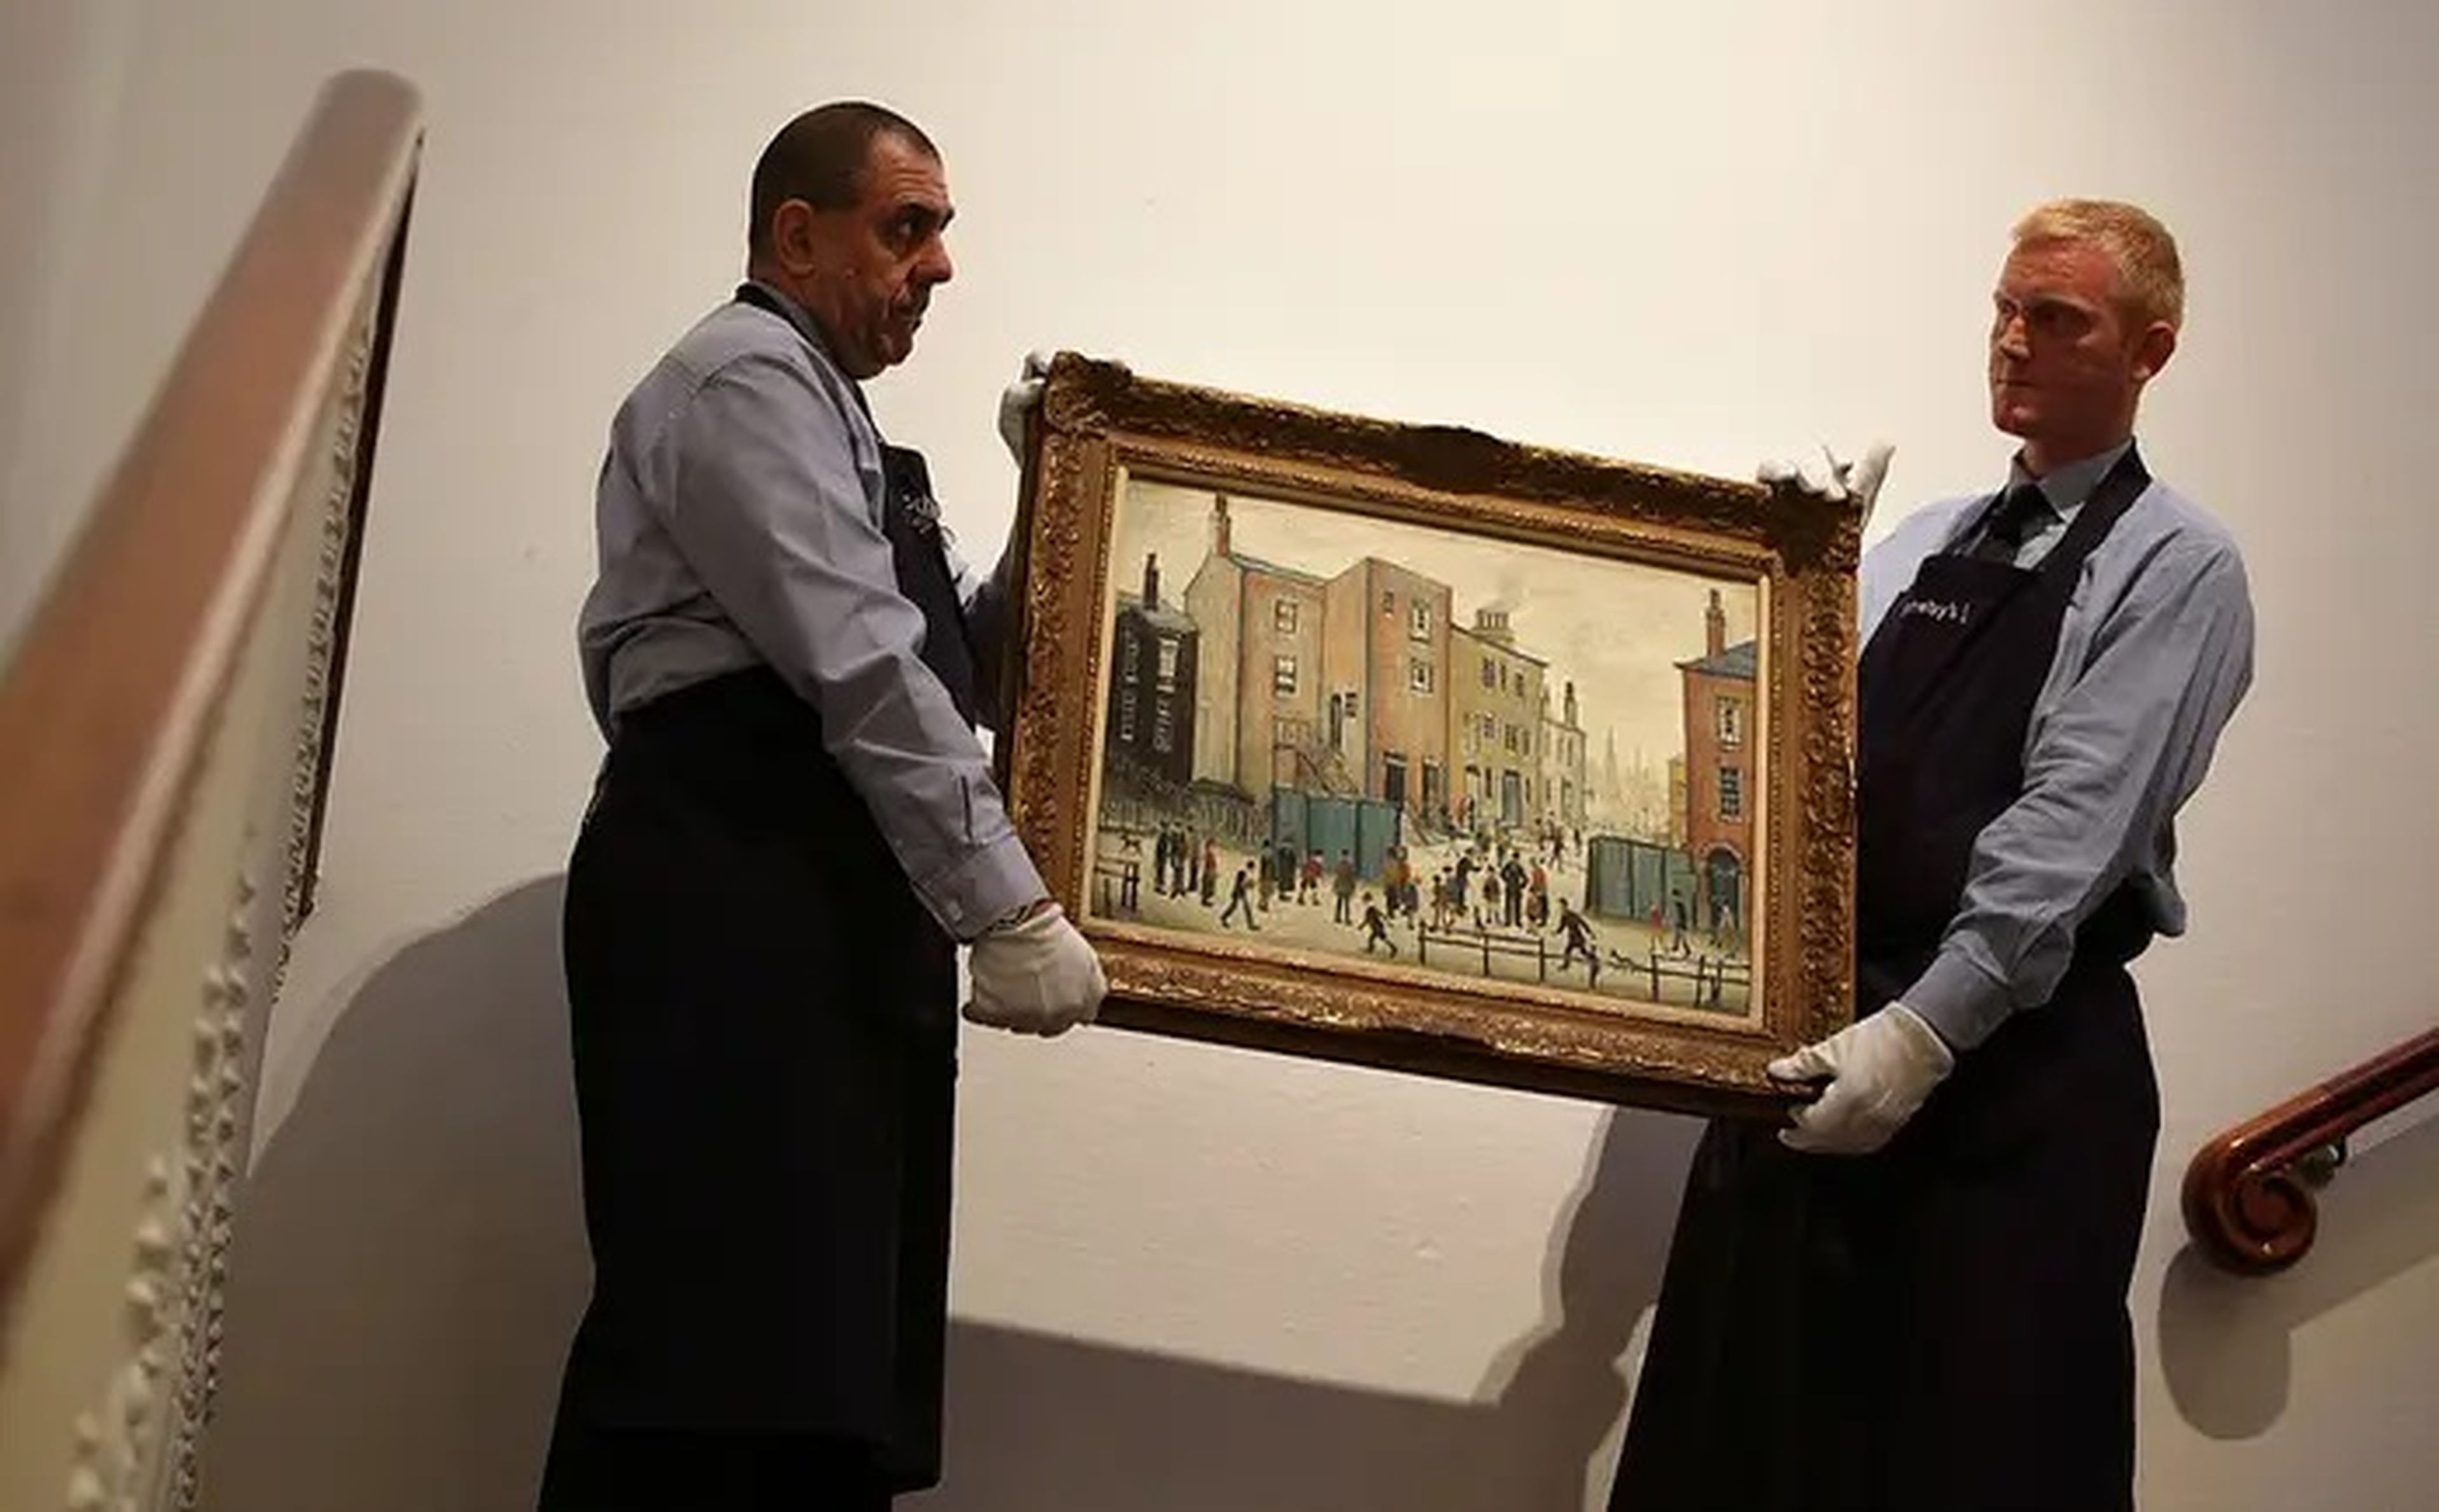 2 trabajadores de la casa de subastas de Sotheby's mueven una pintura de L.S. Lowry el 24 de septiembre de 2009 en Londres, Inglaterra.